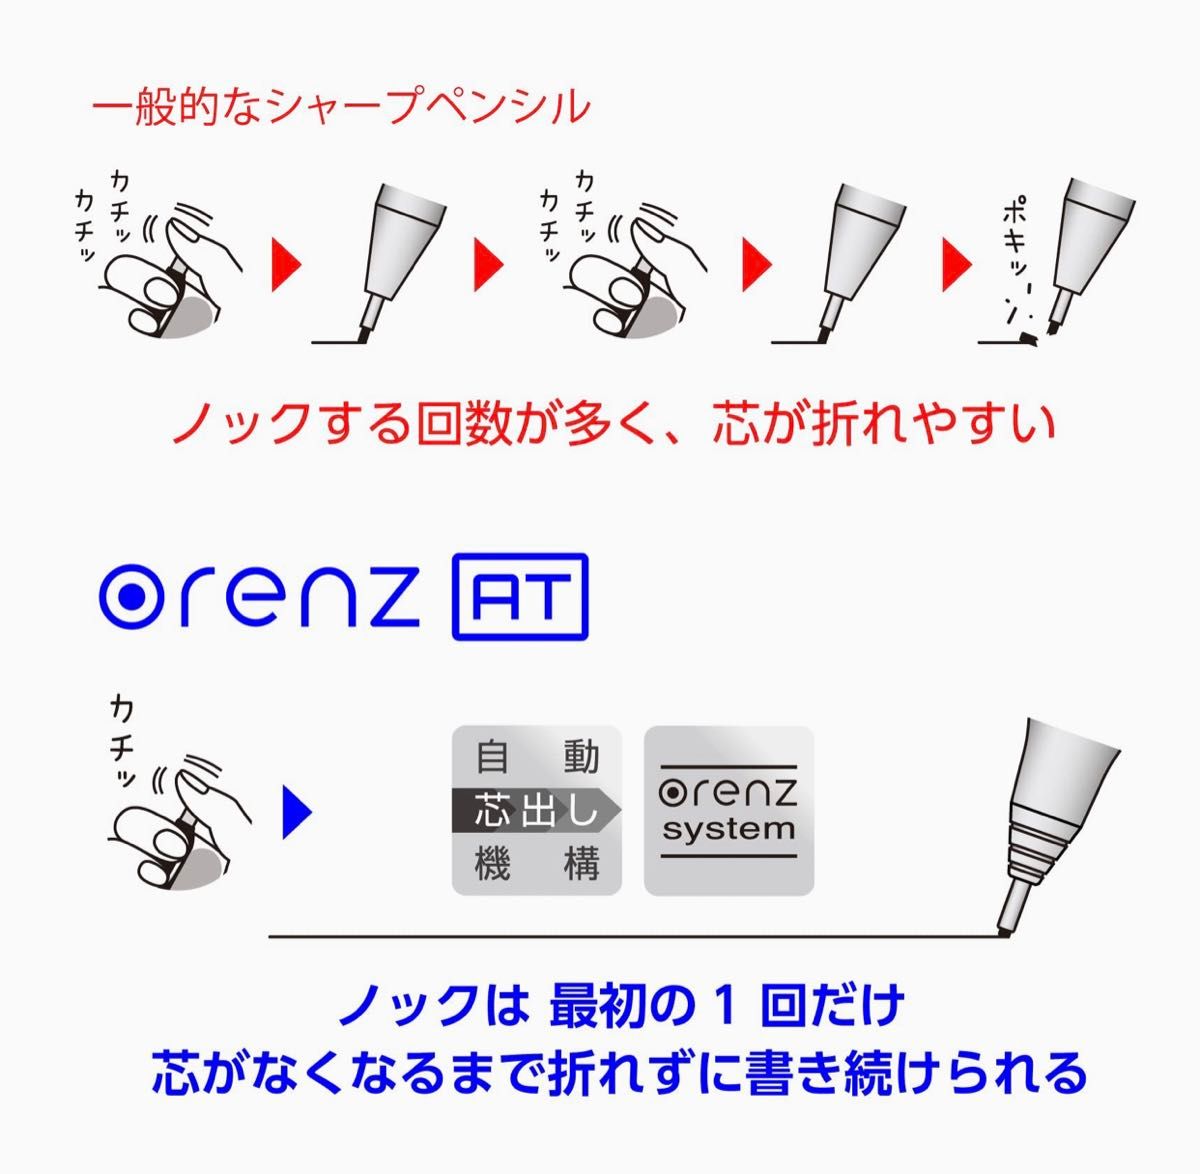 【新品・未使用】ぺんてる シャープペン オレンズAT 0.5シルバー X